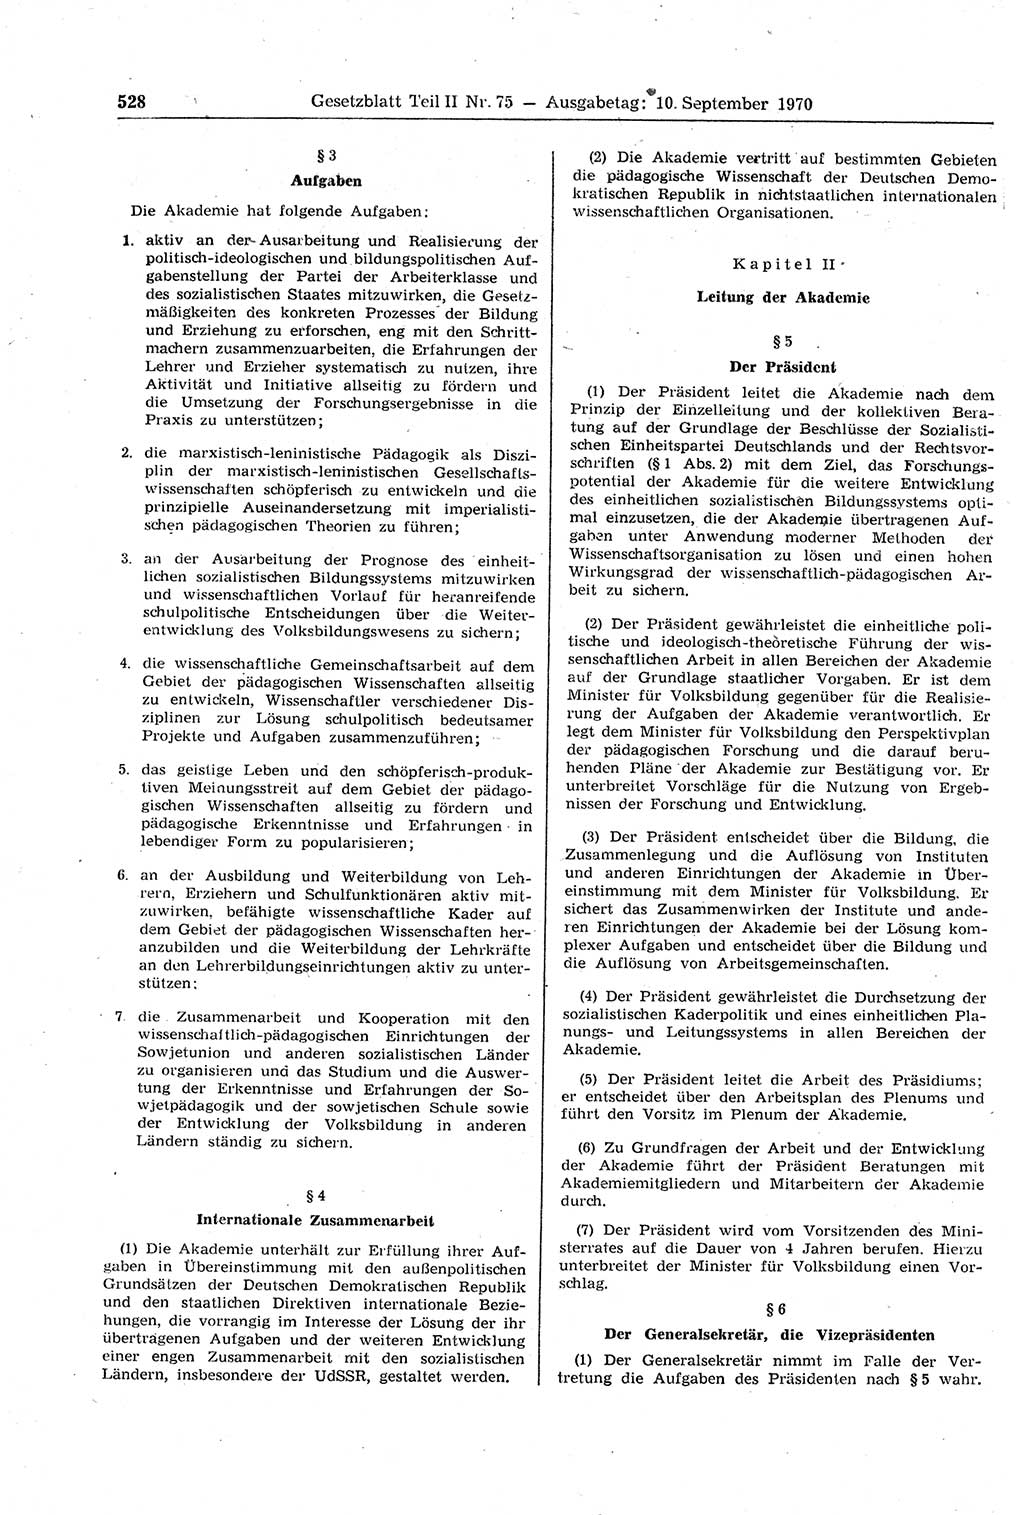 Gesetzblatt (GBl.) der Deutschen Demokratischen Republik (DDR) Teil ⅠⅠ 1970, Seite 528 (GBl. DDR ⅠⅠ 1970, S. 528)